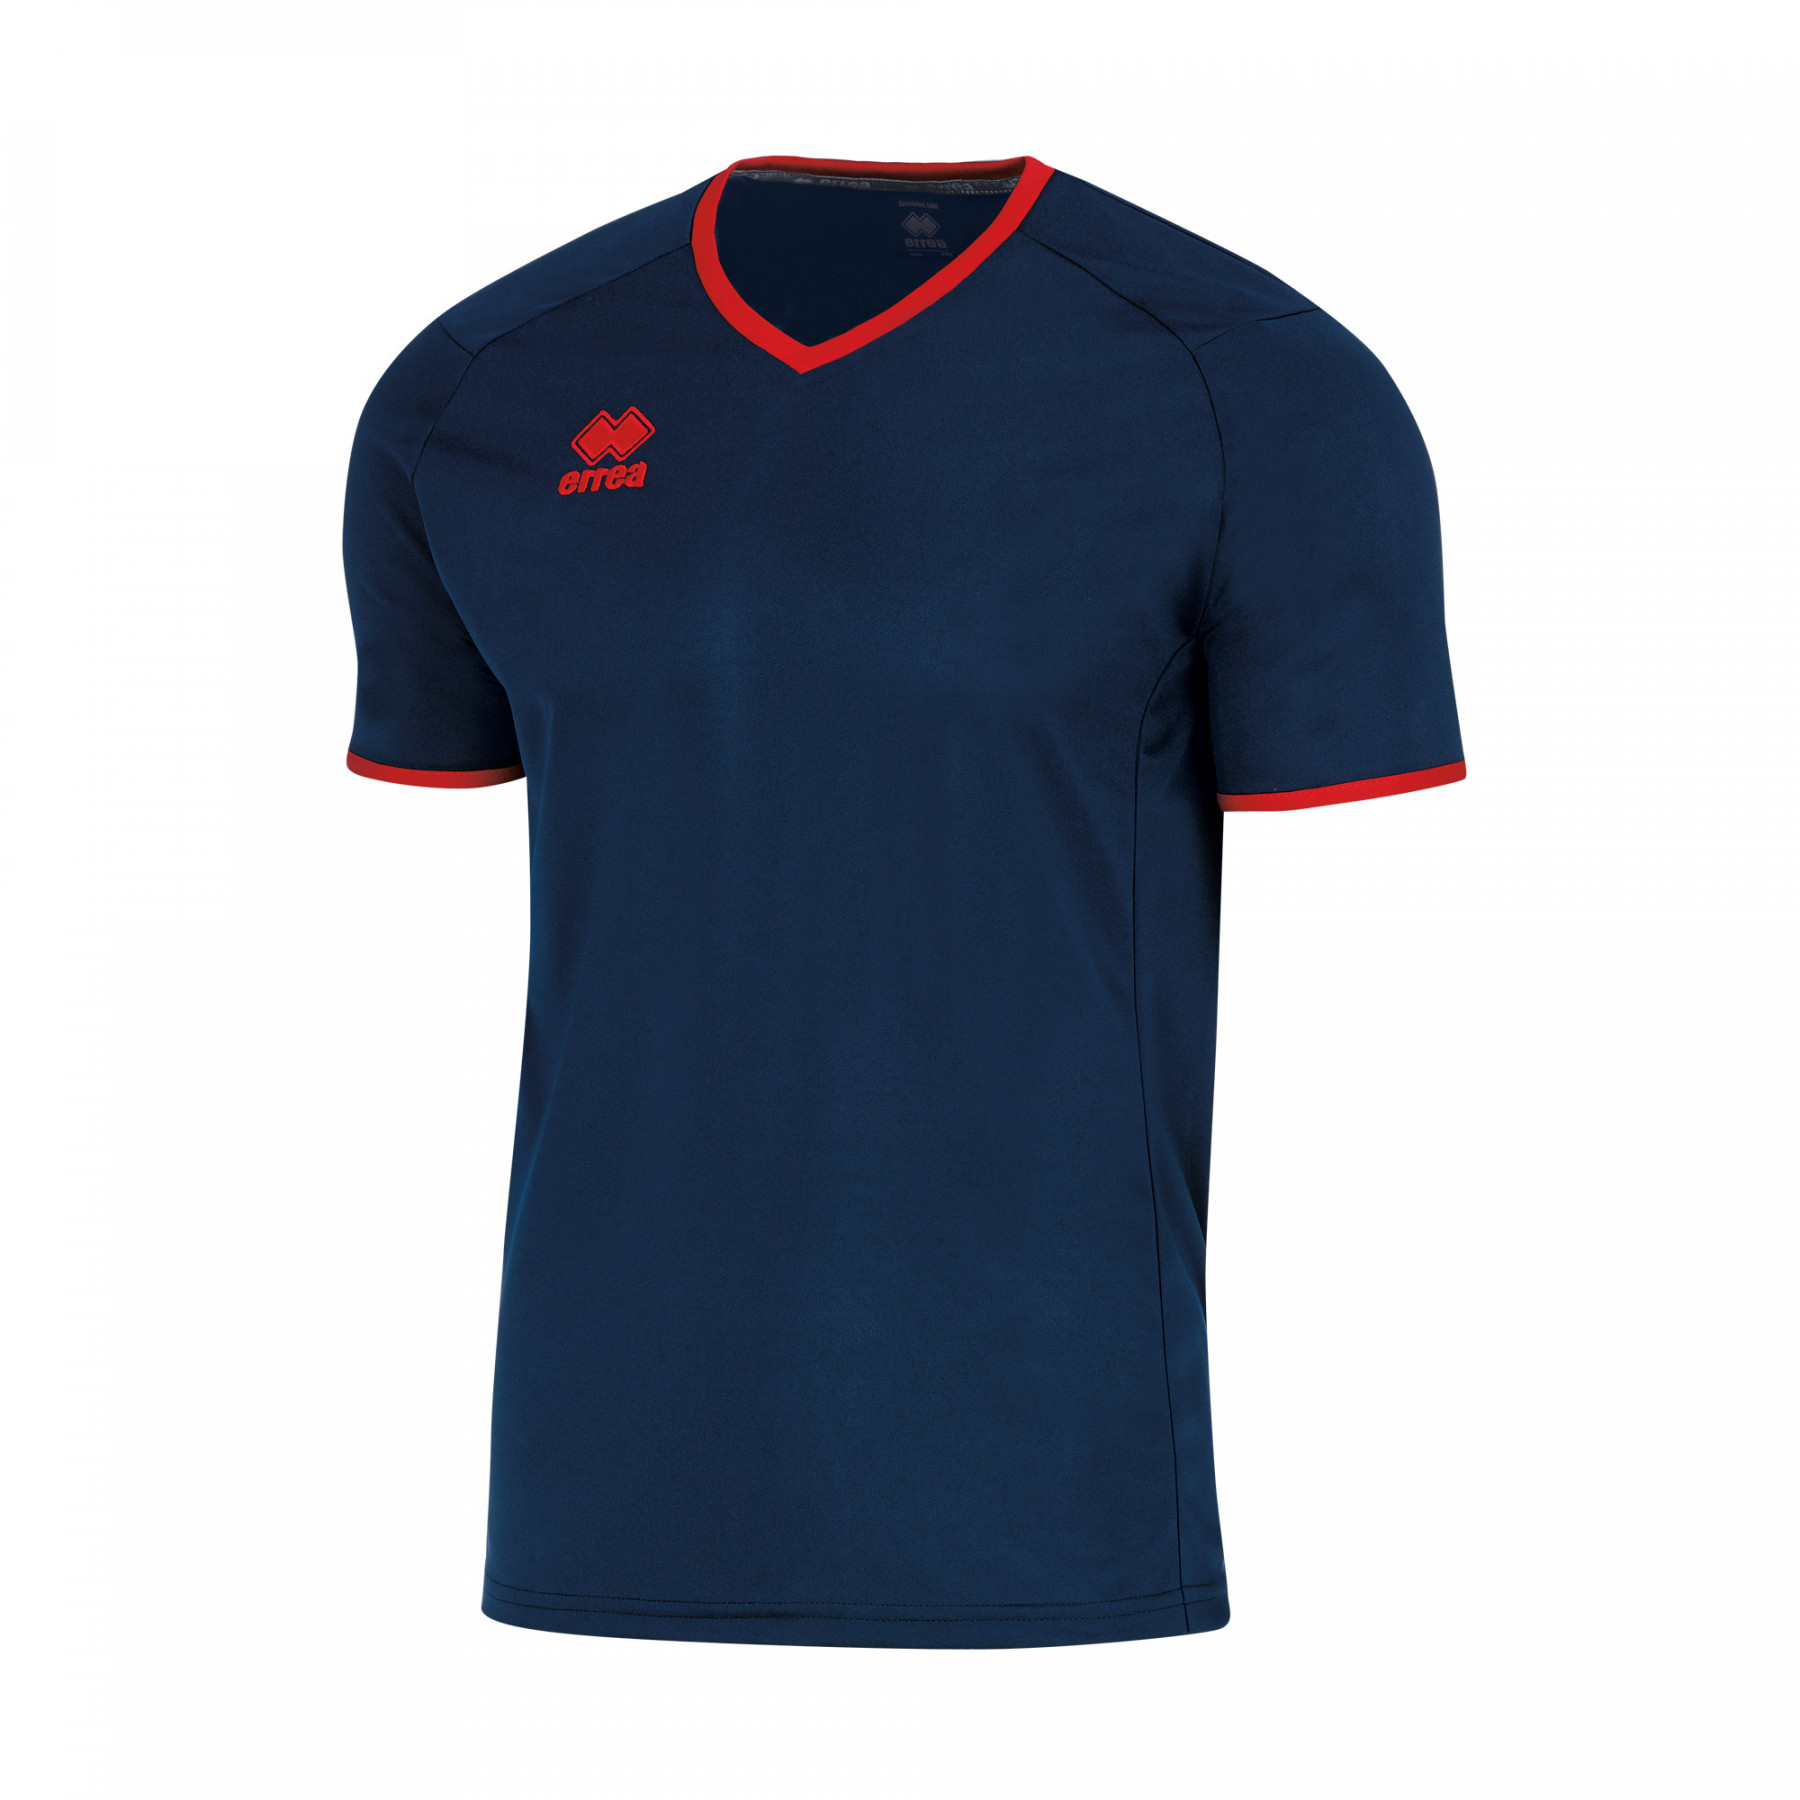 Волейбольная футболка мужская Errea LENNOX Темно-синий/Красный